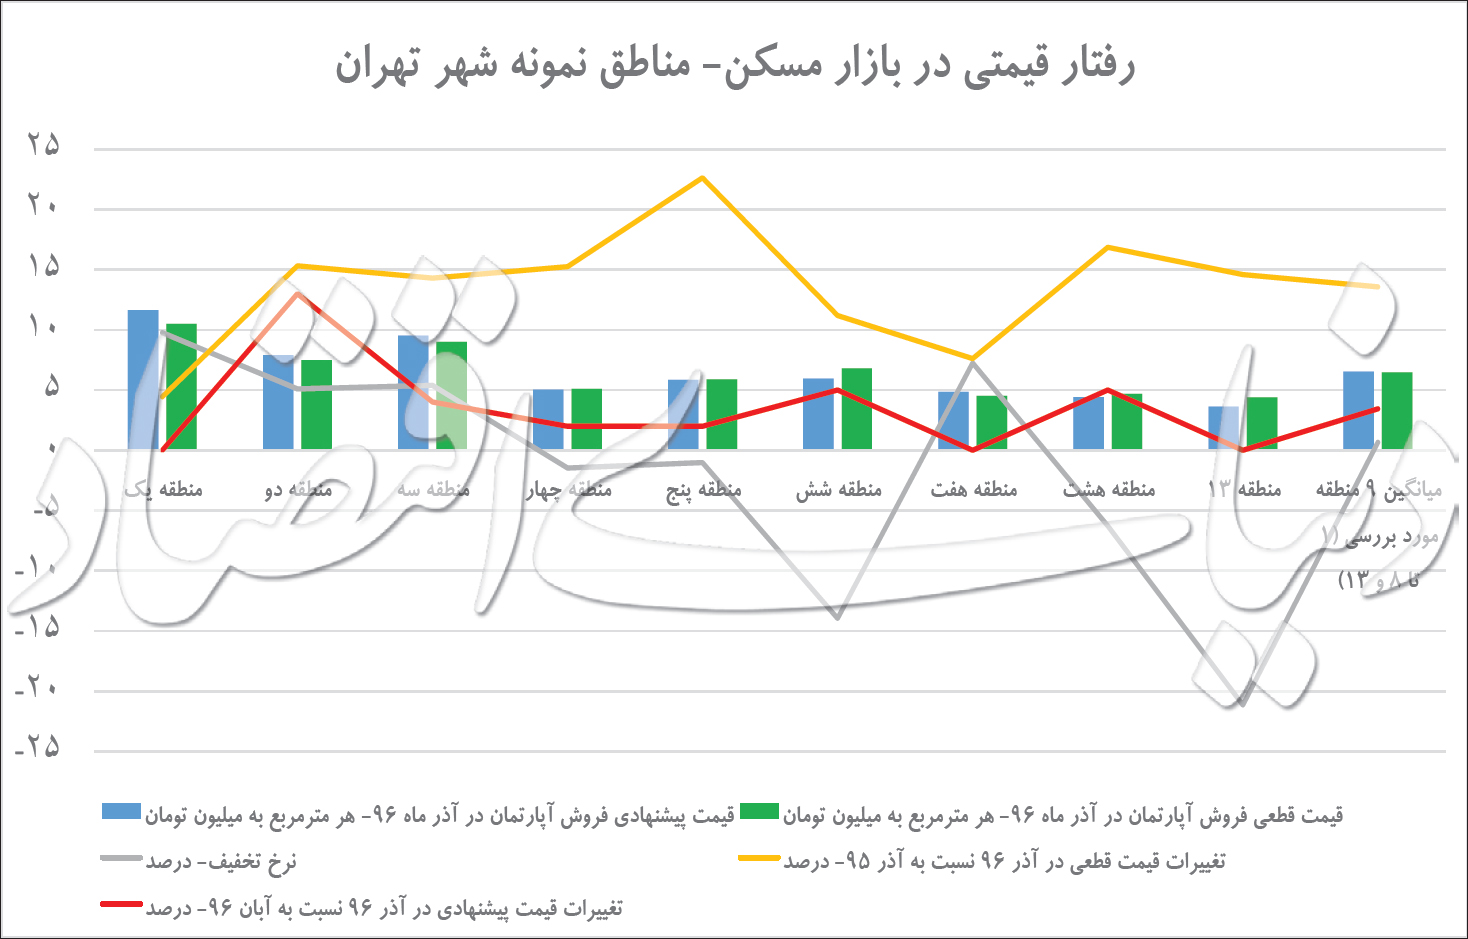 بازار مسکن تهران در پاییز ۹۶